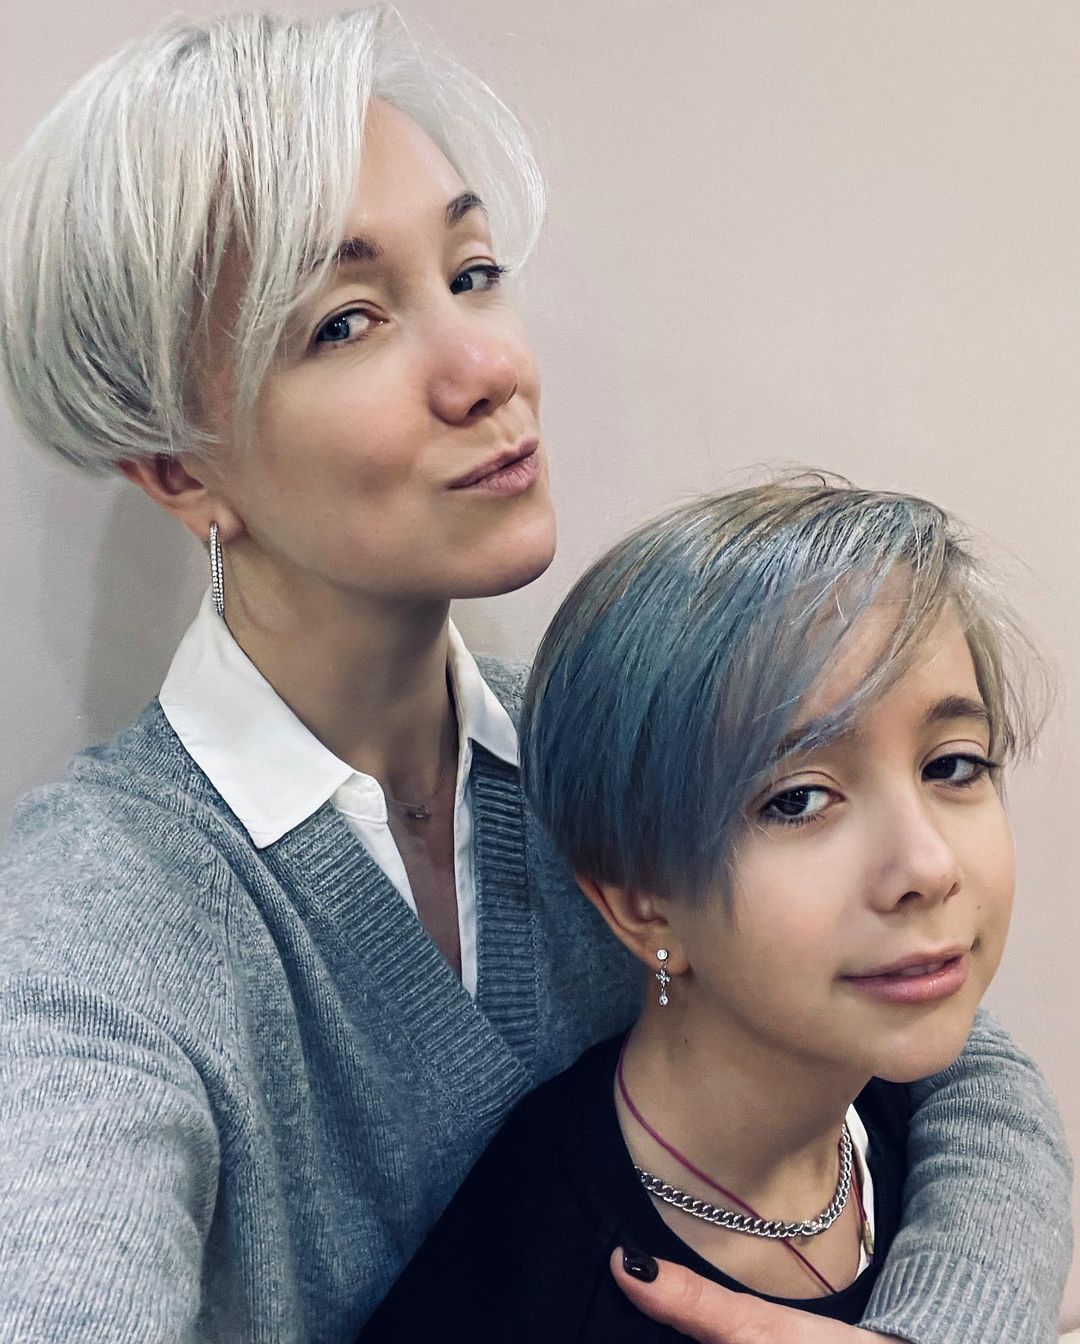 Дарья Мороз разместила фото дочери от Константина Богомолова с новой стрижкой и экстремальным цветом волос